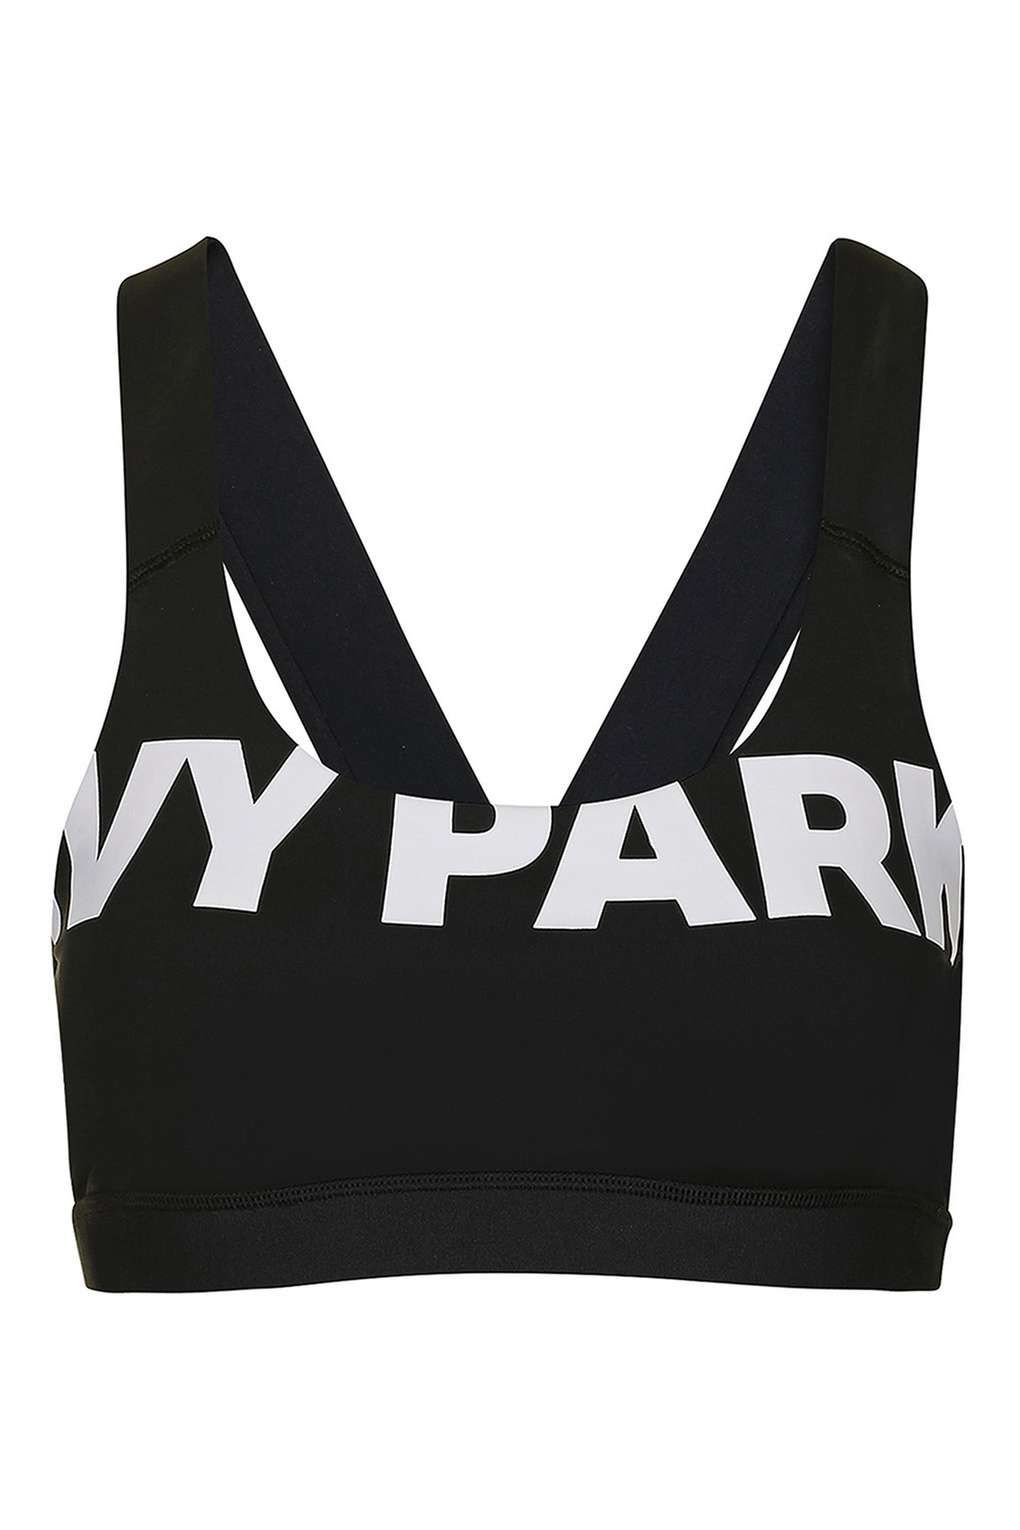 IVY PARK black sports bra  Black sports bra, Black media, Women's